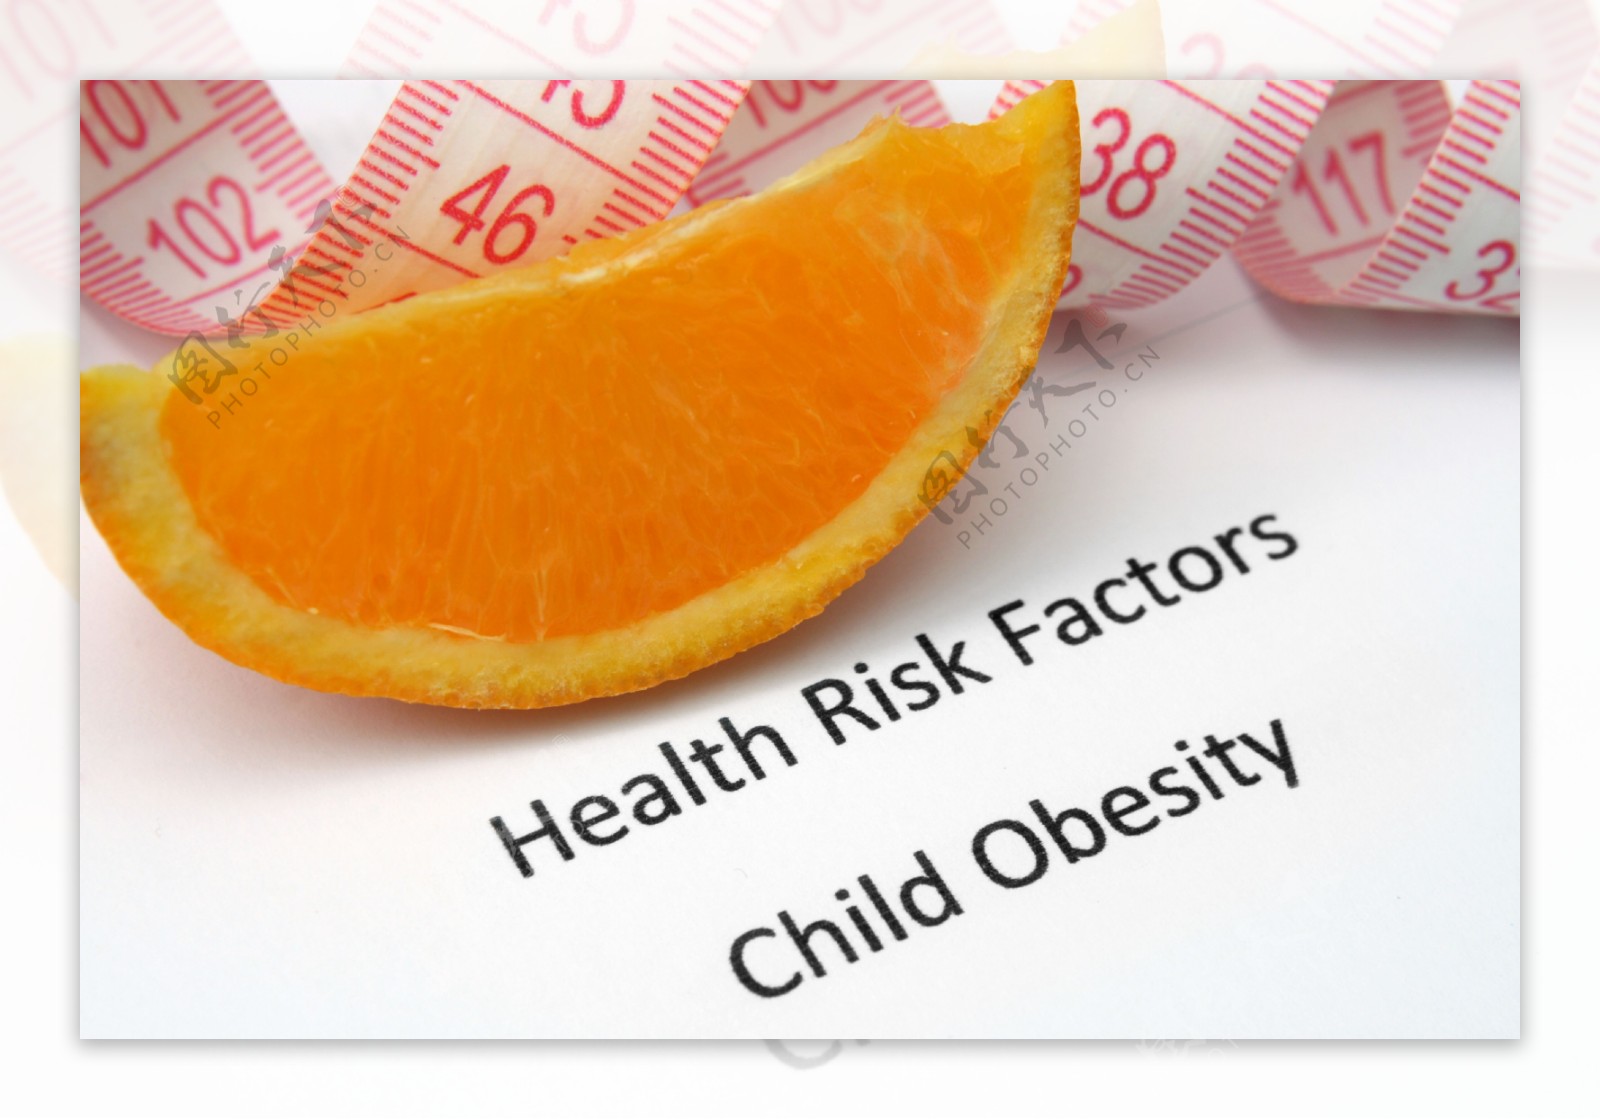 健康的孩子肥胖的风险